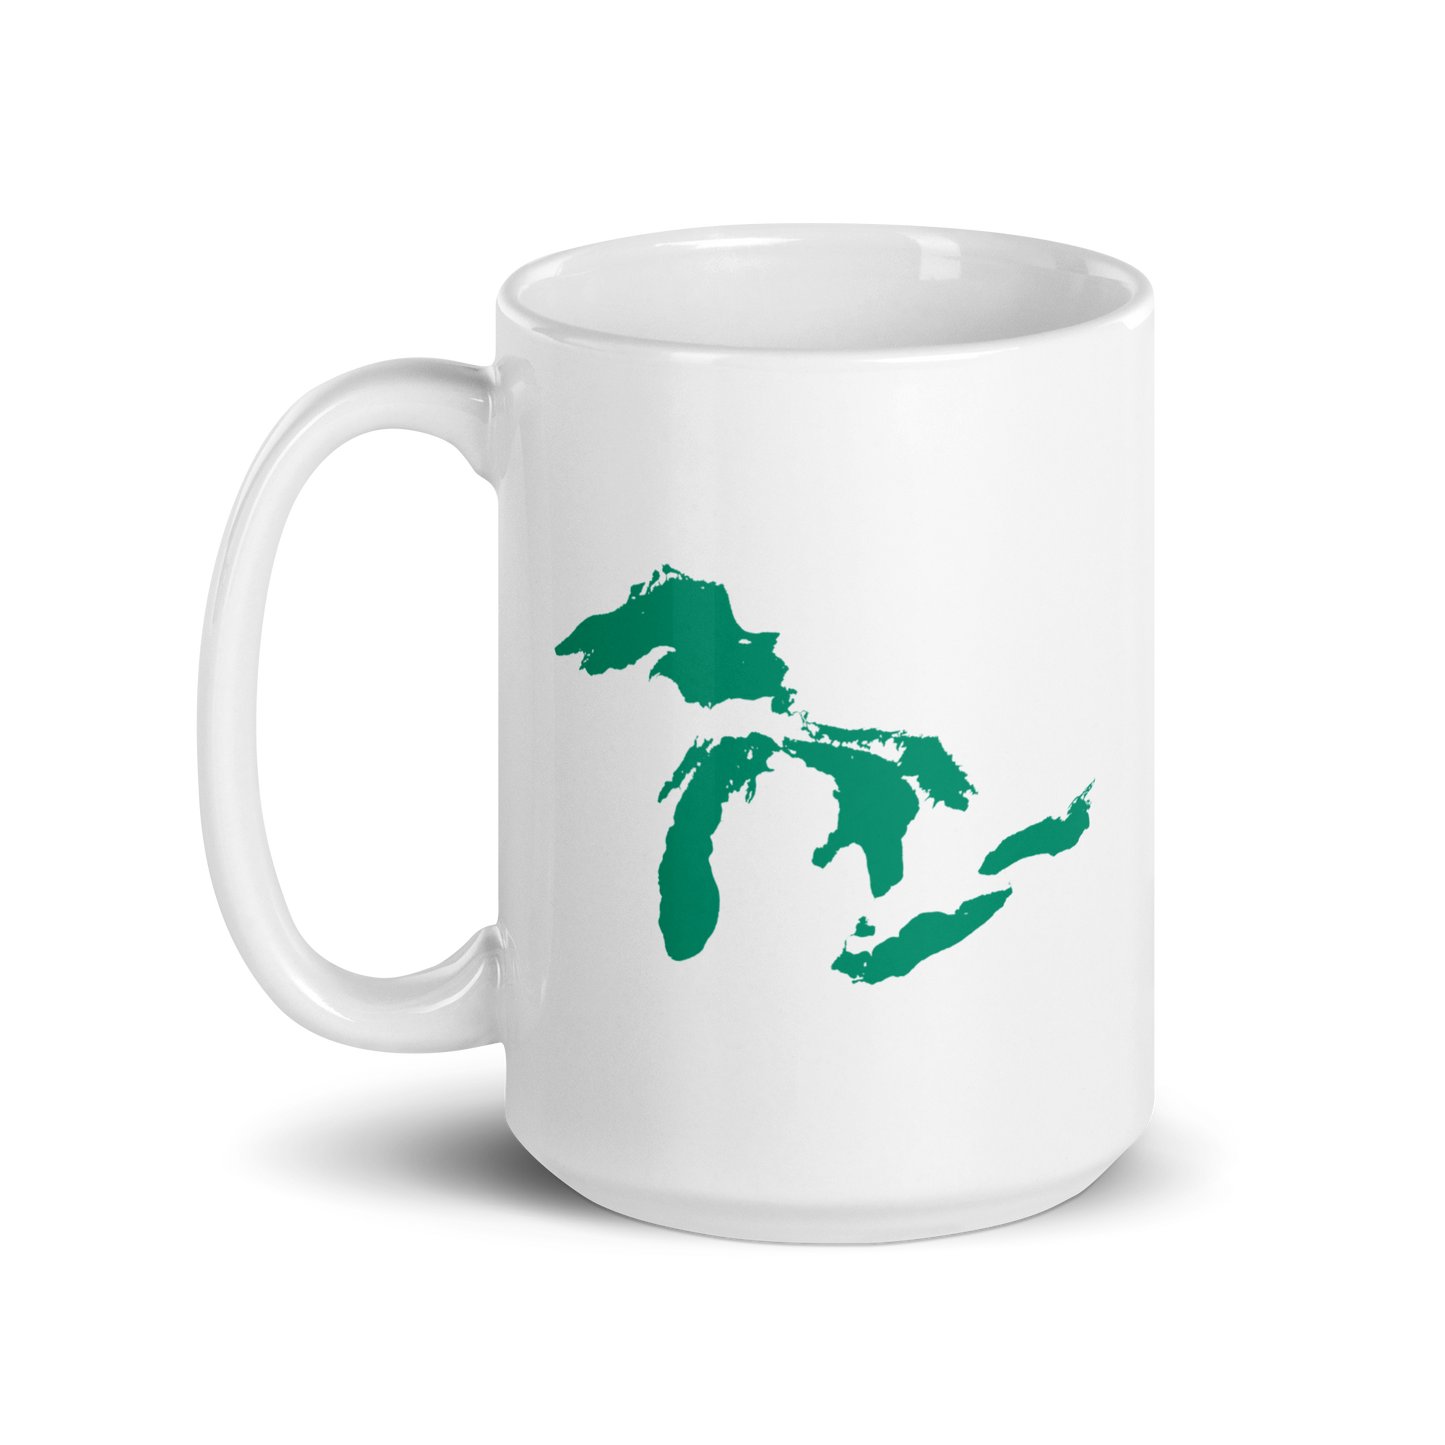 Great Lakes Mug (Emerald Green)